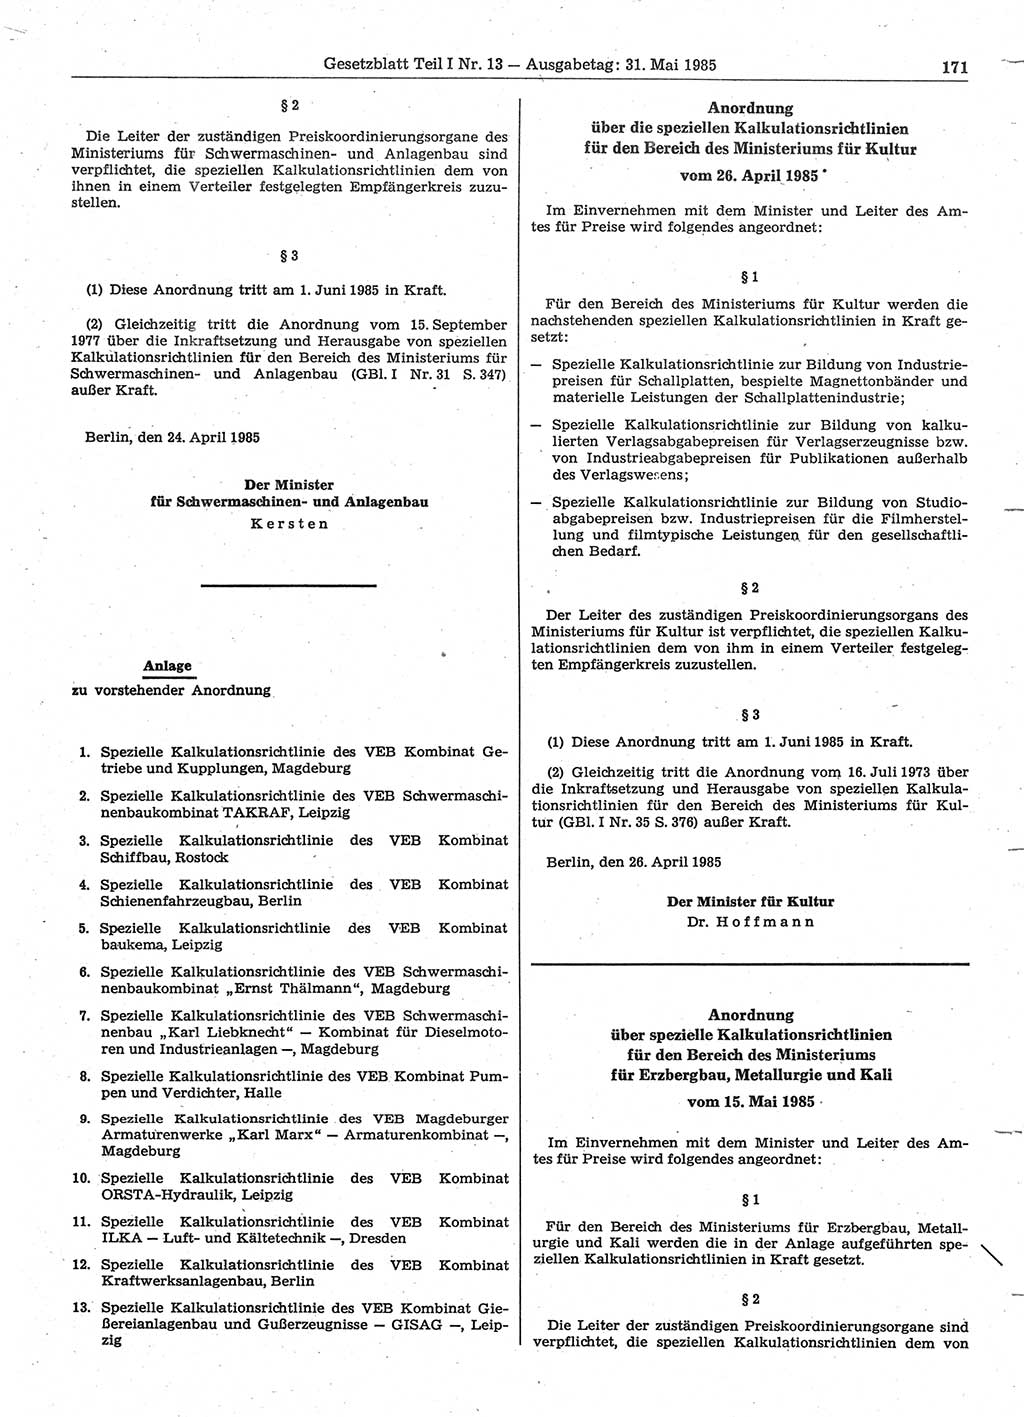 Gesetzblatt (GBl.) der Deutschen Demokratischen Republik (DDR) Teil Ⅰ 1985, Seite 171 (GBl. DDR Ⅰ 1985, S. 171)